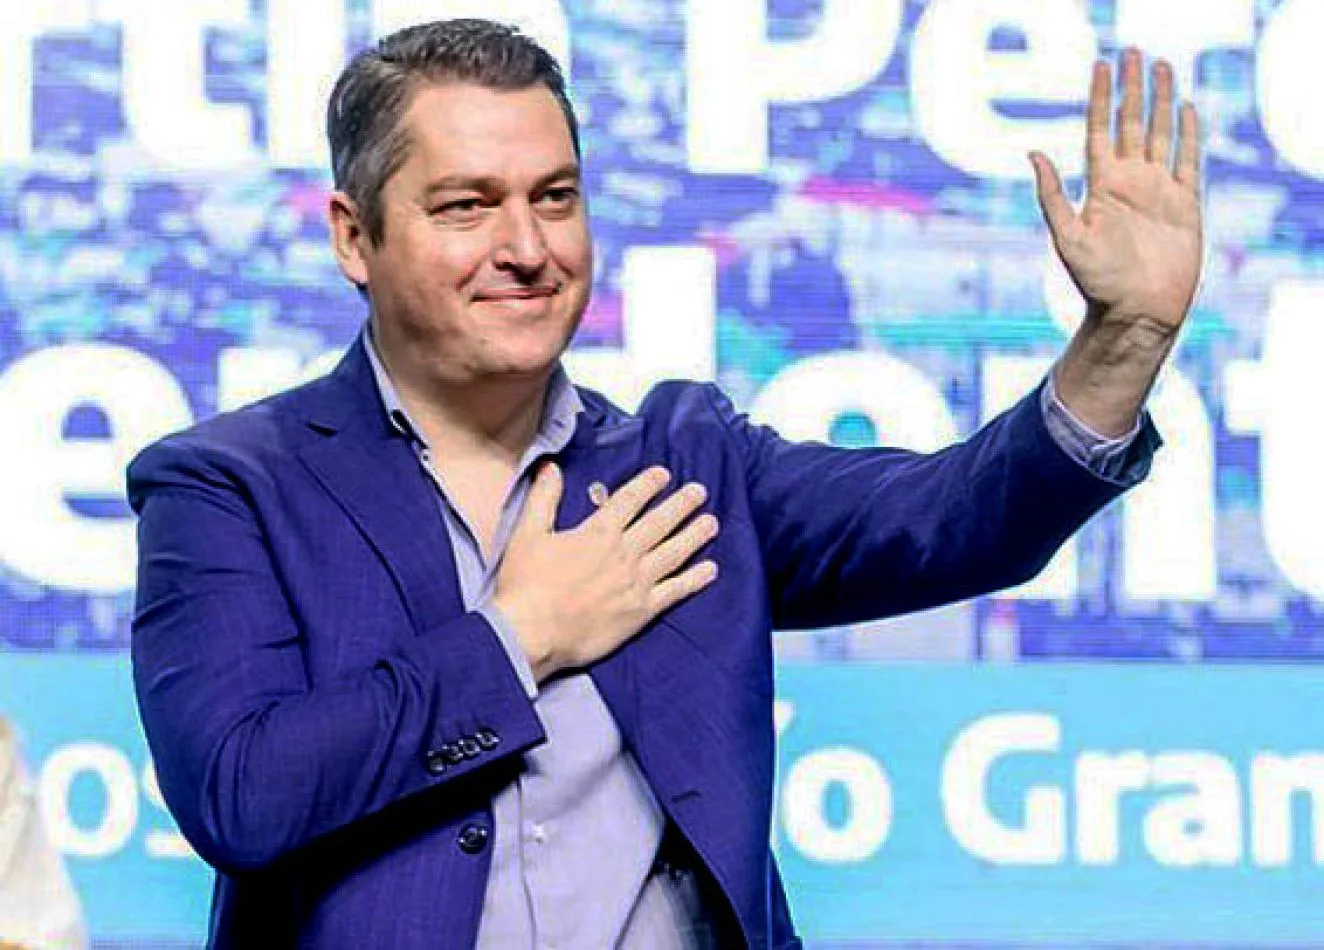 El intendente de Río Grande Martín Pérez iniciará en la tarde de este jueves 14 de diciembre su segundo mandato.